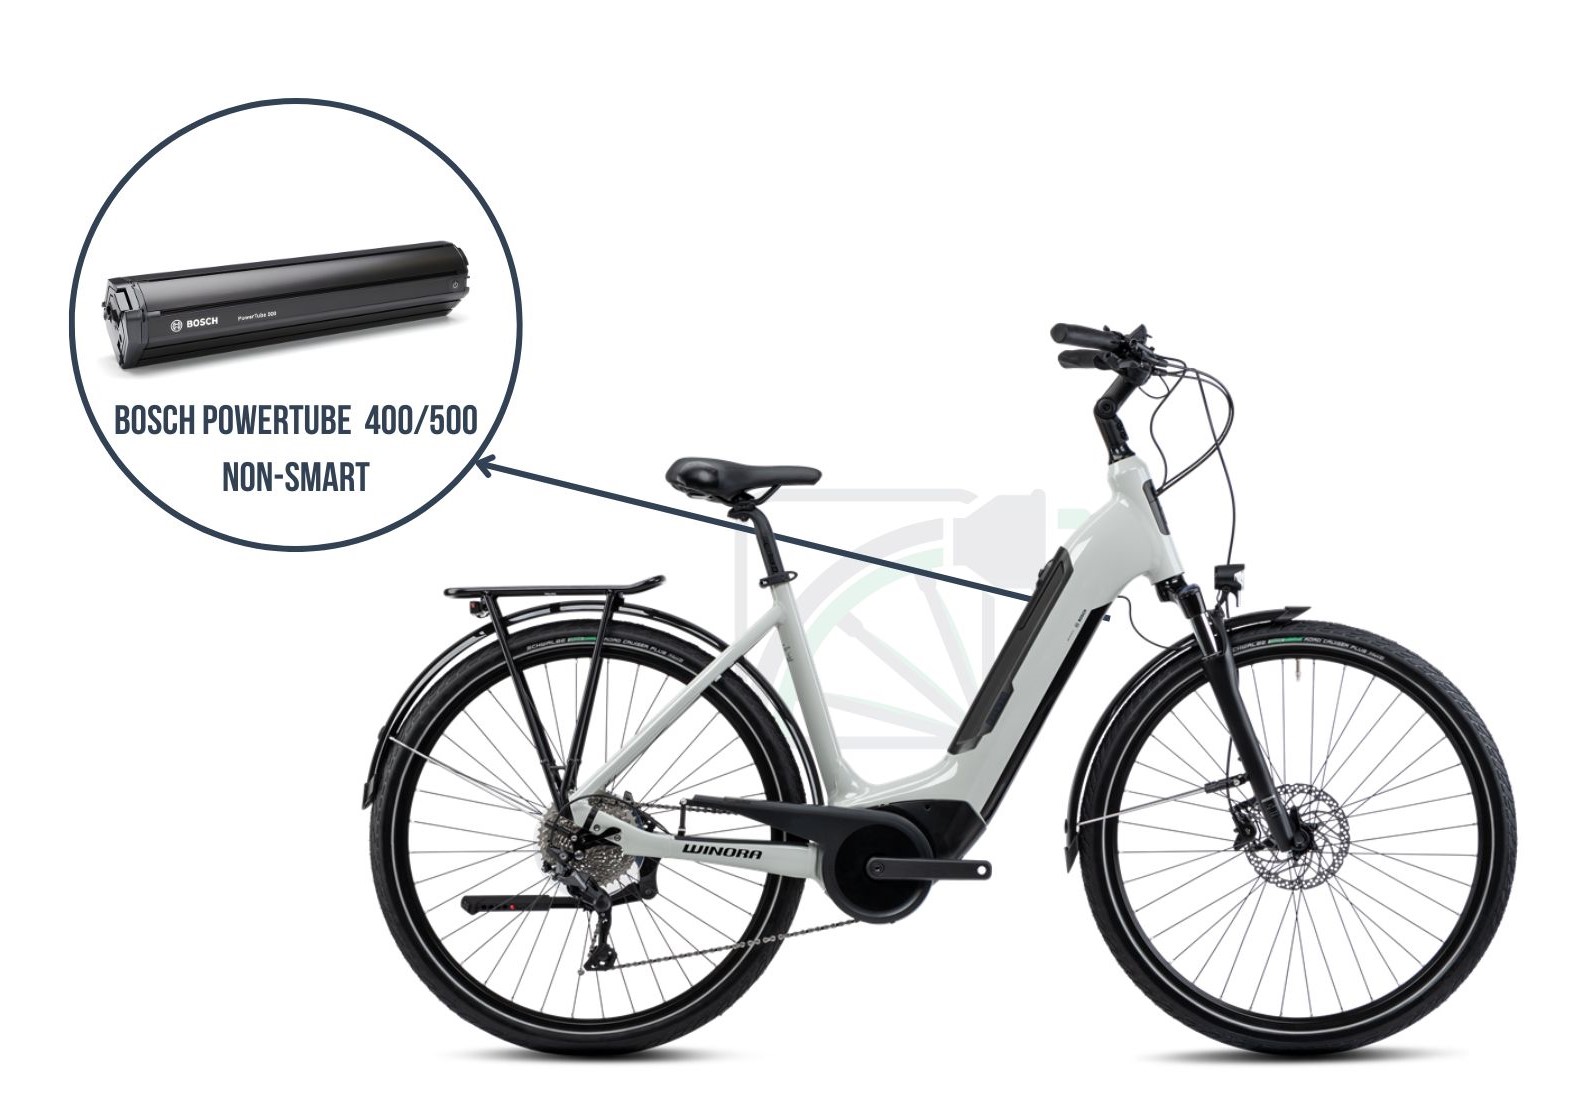  En esta imagen se muestra la Winora Sinus Tria 10. Aquí se destaca la batería que corresponde a esta bicicleta, a saber, la Bosch Powertube 400/500non-SMART